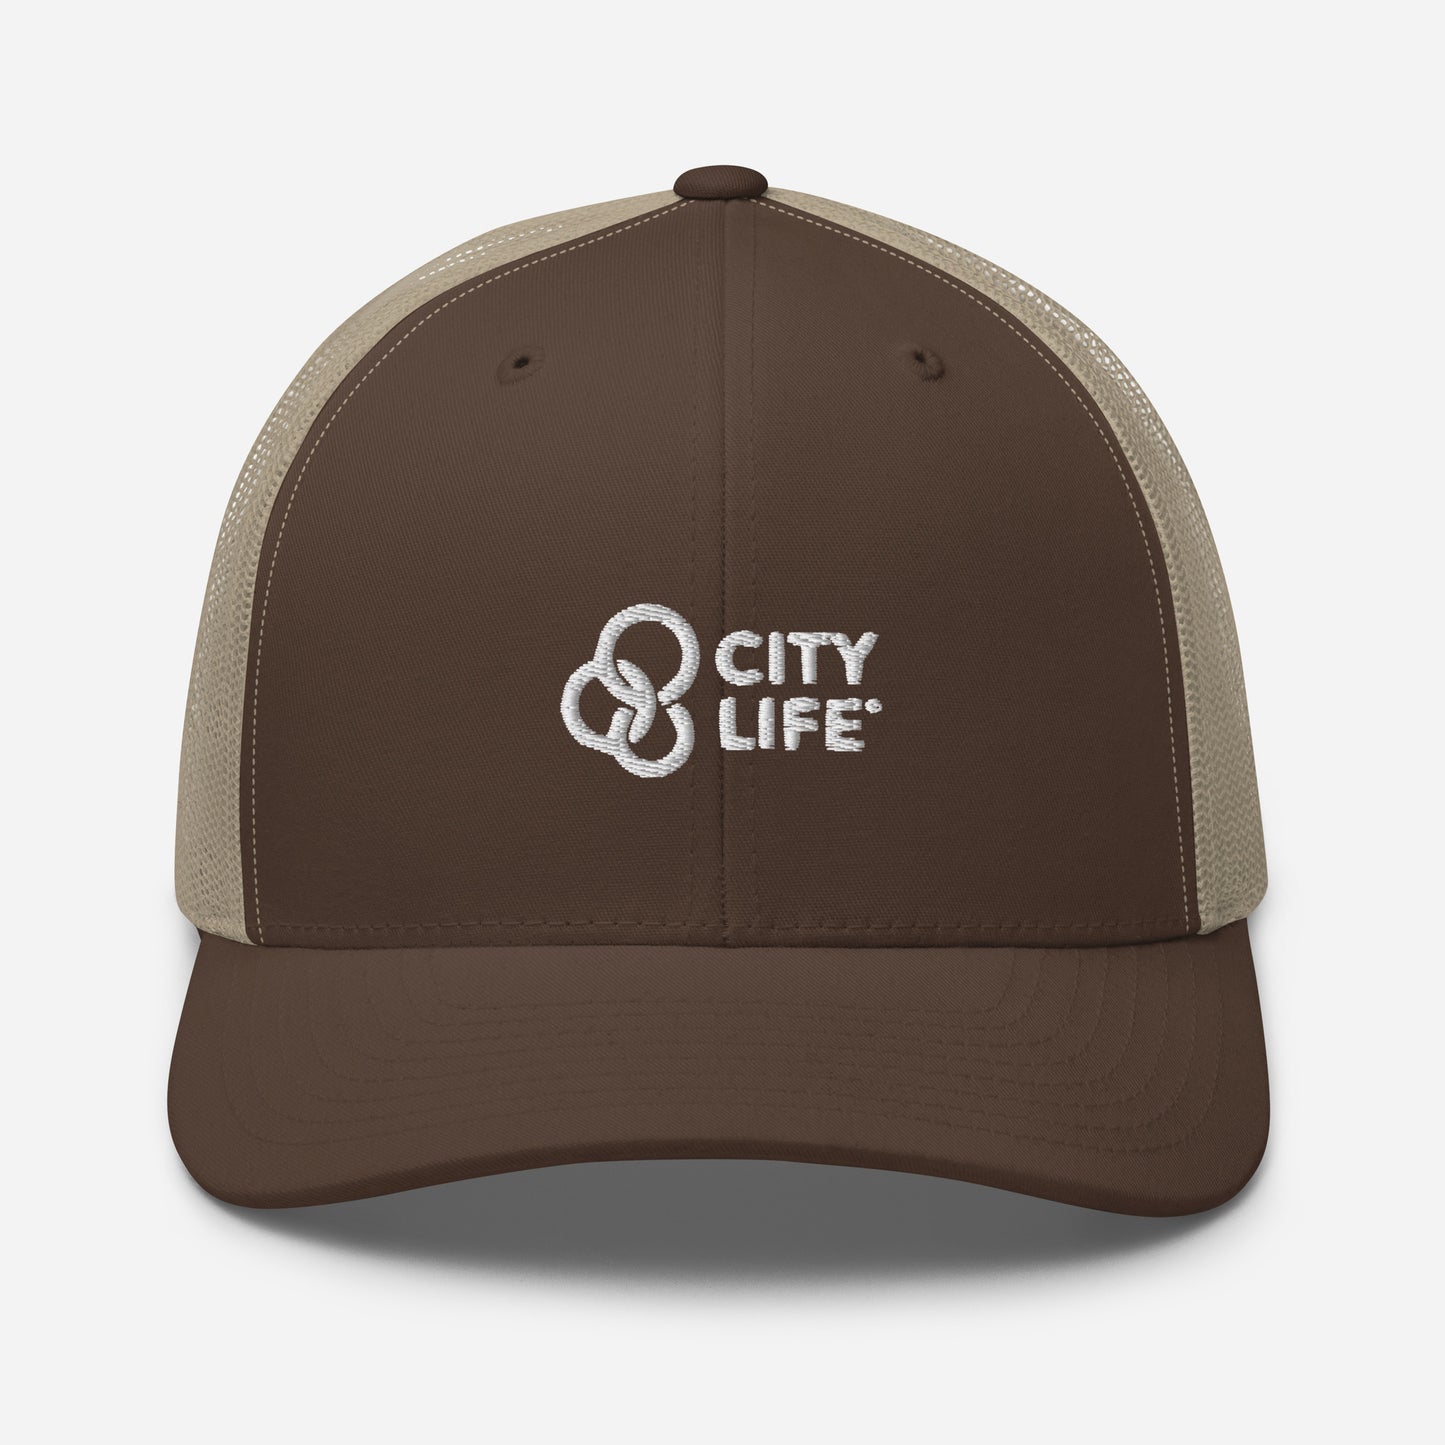 City Life Trucker Cap